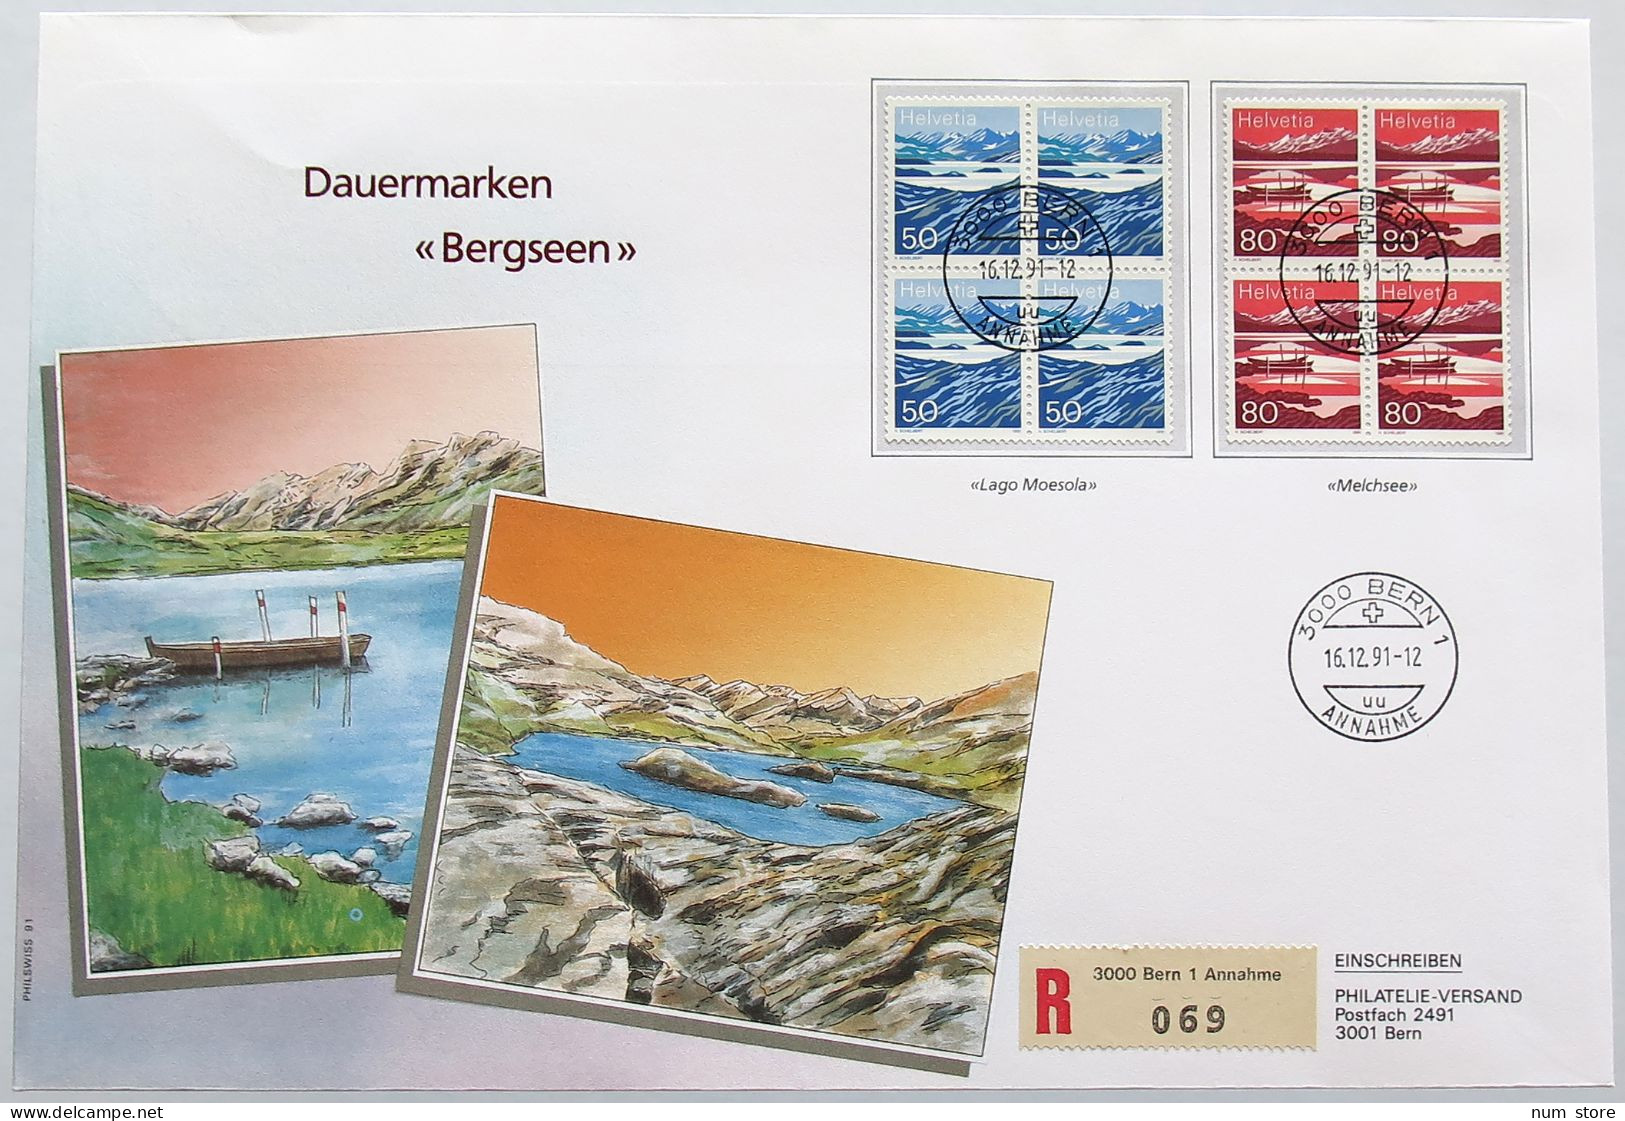 SWITZERLAND STAMPS, STATIONERY DAUERMARKEN BERGSEEN 1991 #alb006 0049 - Schweiz